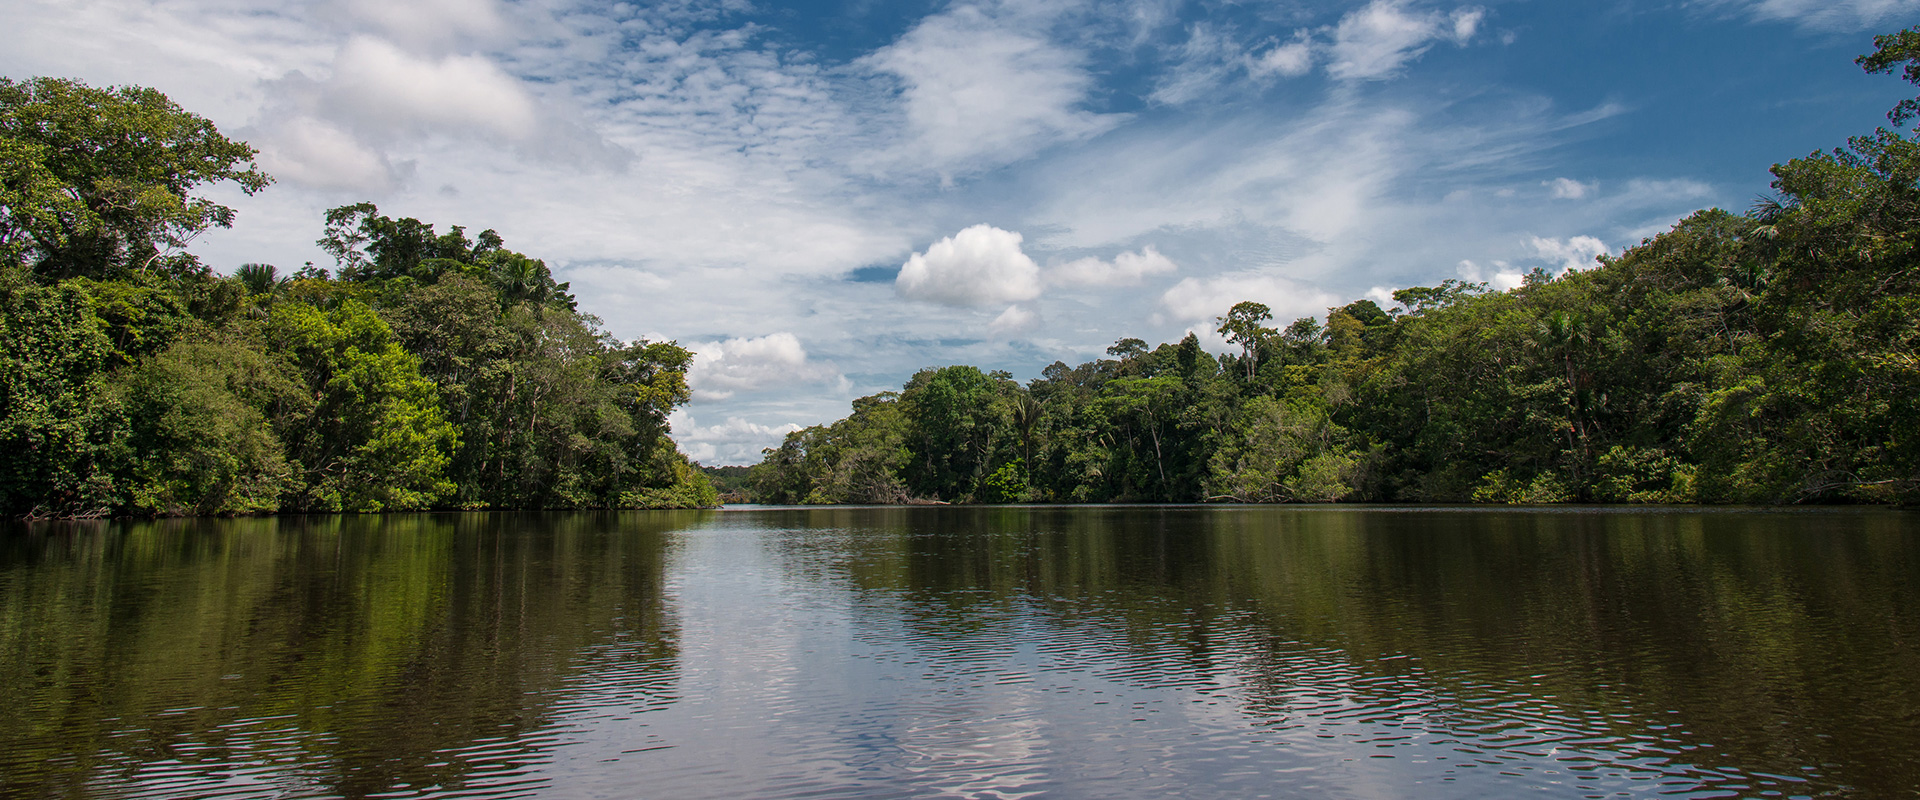 Amazon River Tours